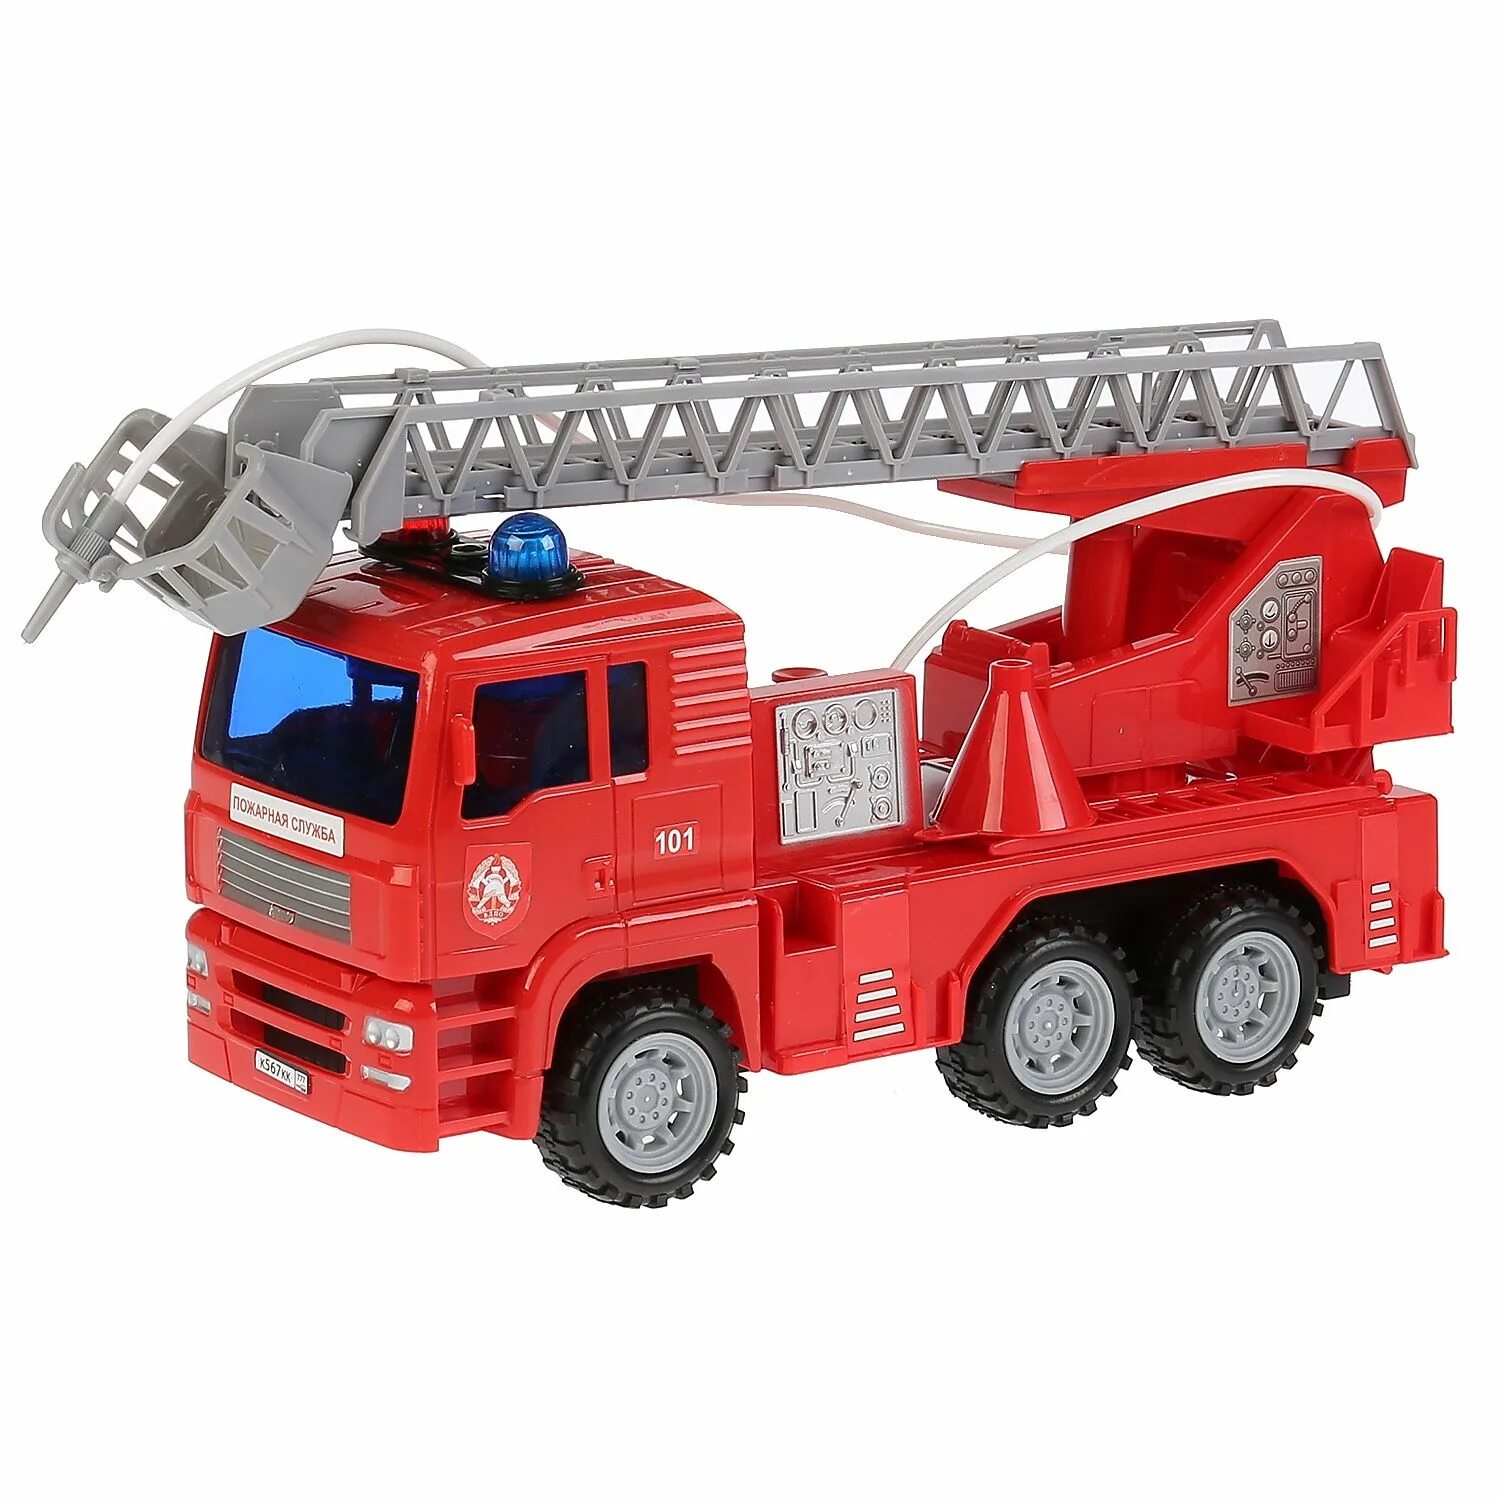 Пожарный автомобиль Технопарк 1335822-r 24 см. Пожарные игрушки Технопарк. Игрушечный пожарный КАМАЗ Технопарк. Машина Технопарк пожарная u1401e-2. Пожарная технопарк